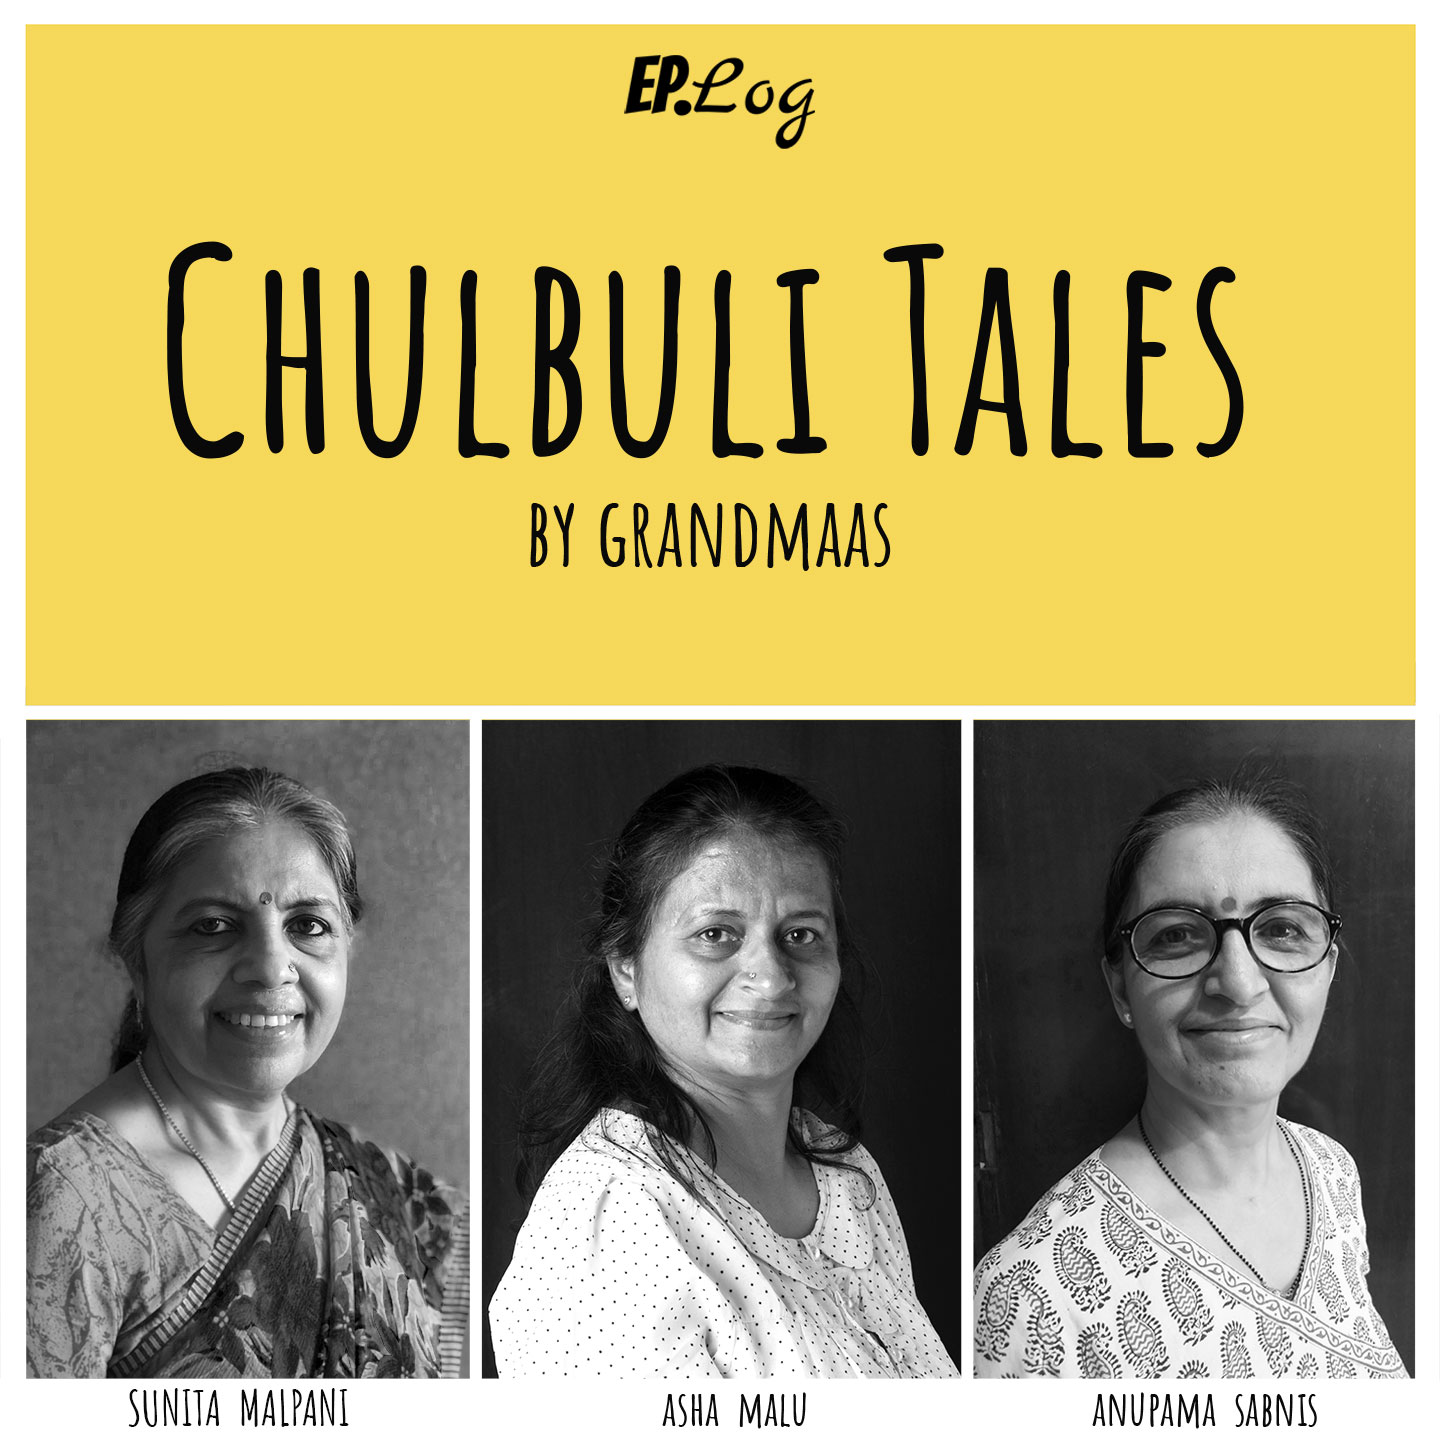 Chulbuli Tales